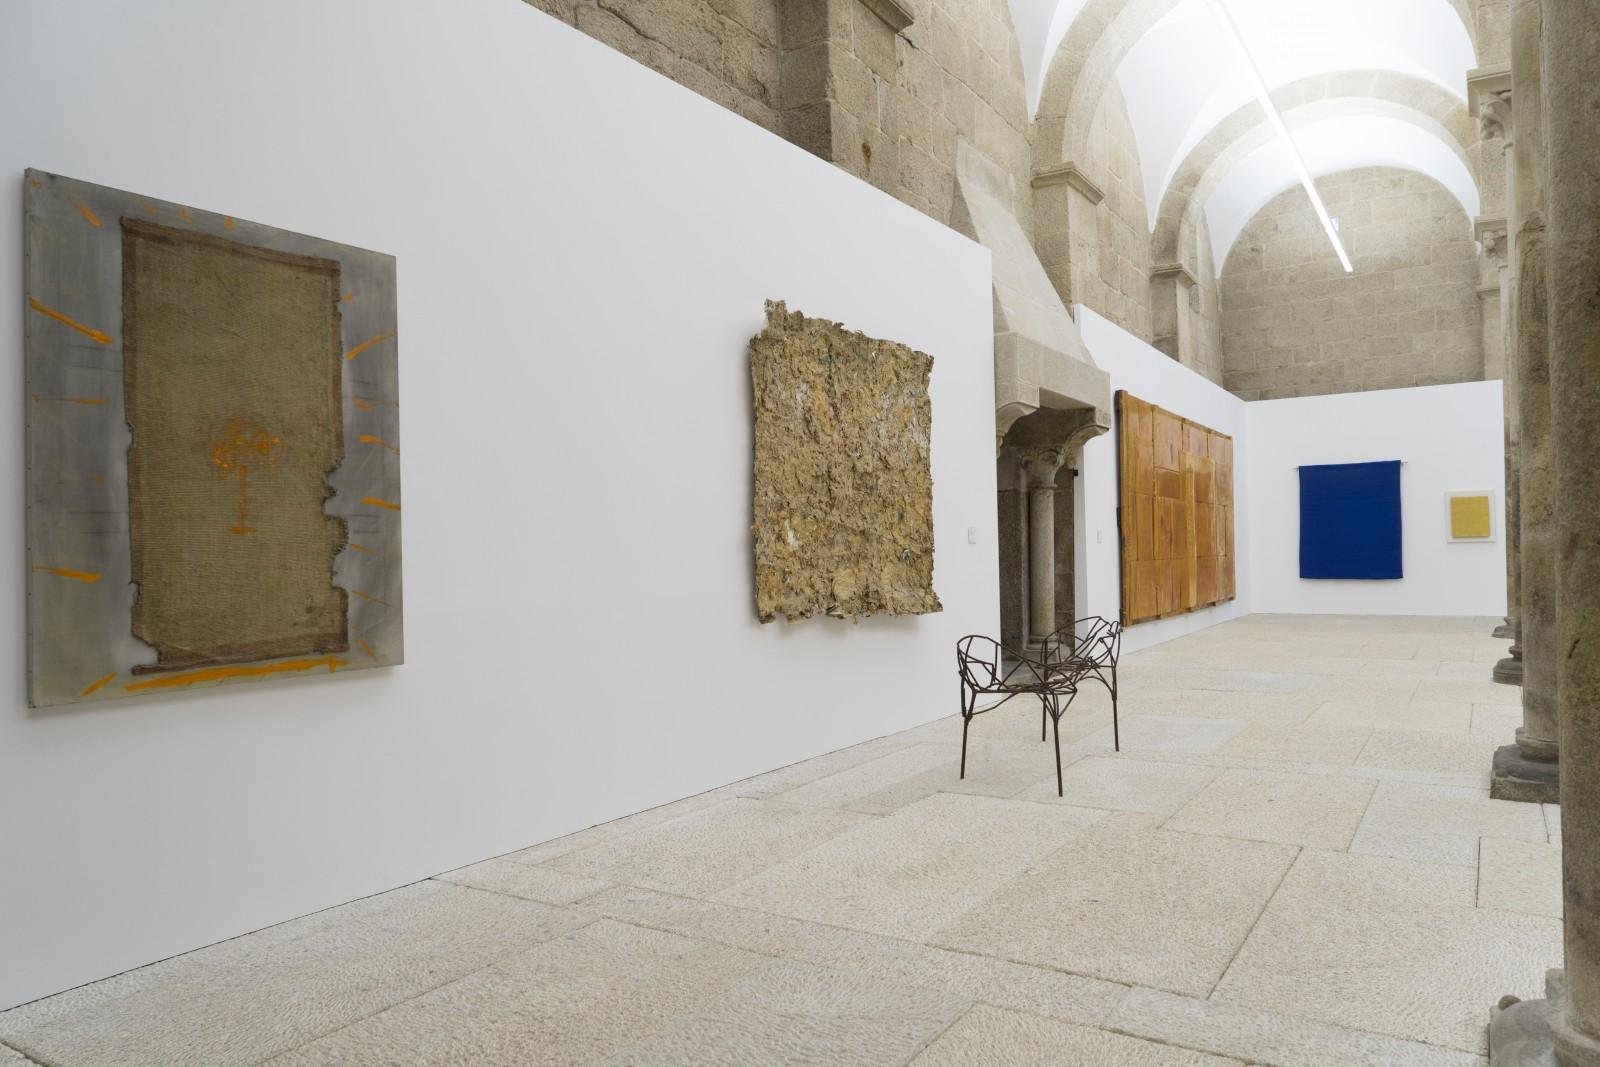 View of the exhibition "On the Road", Palacio de Gelmirez, 2014 (IKB 227, MG 6)